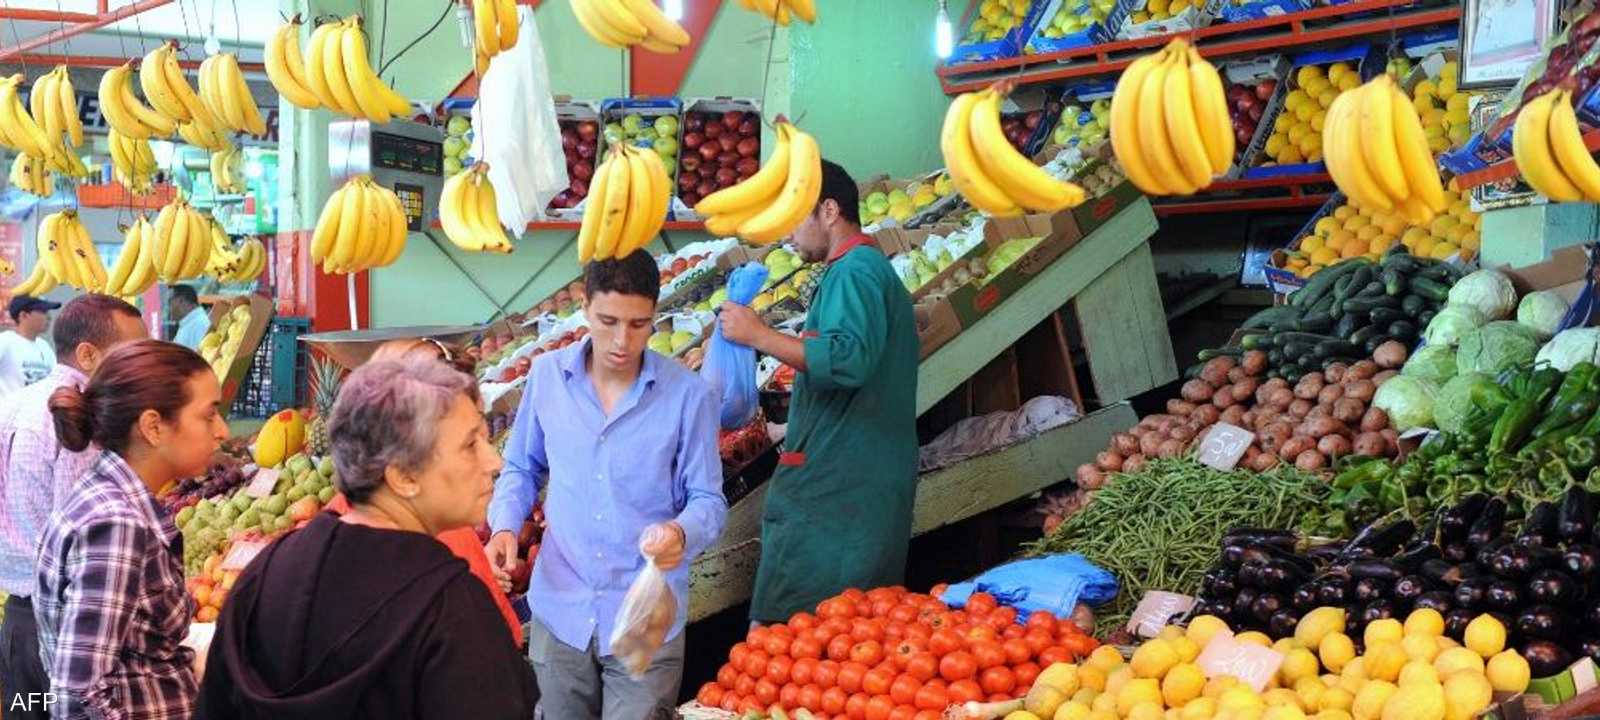 المغرب يحقق اكتفاء في عدد من المواد الغذائية